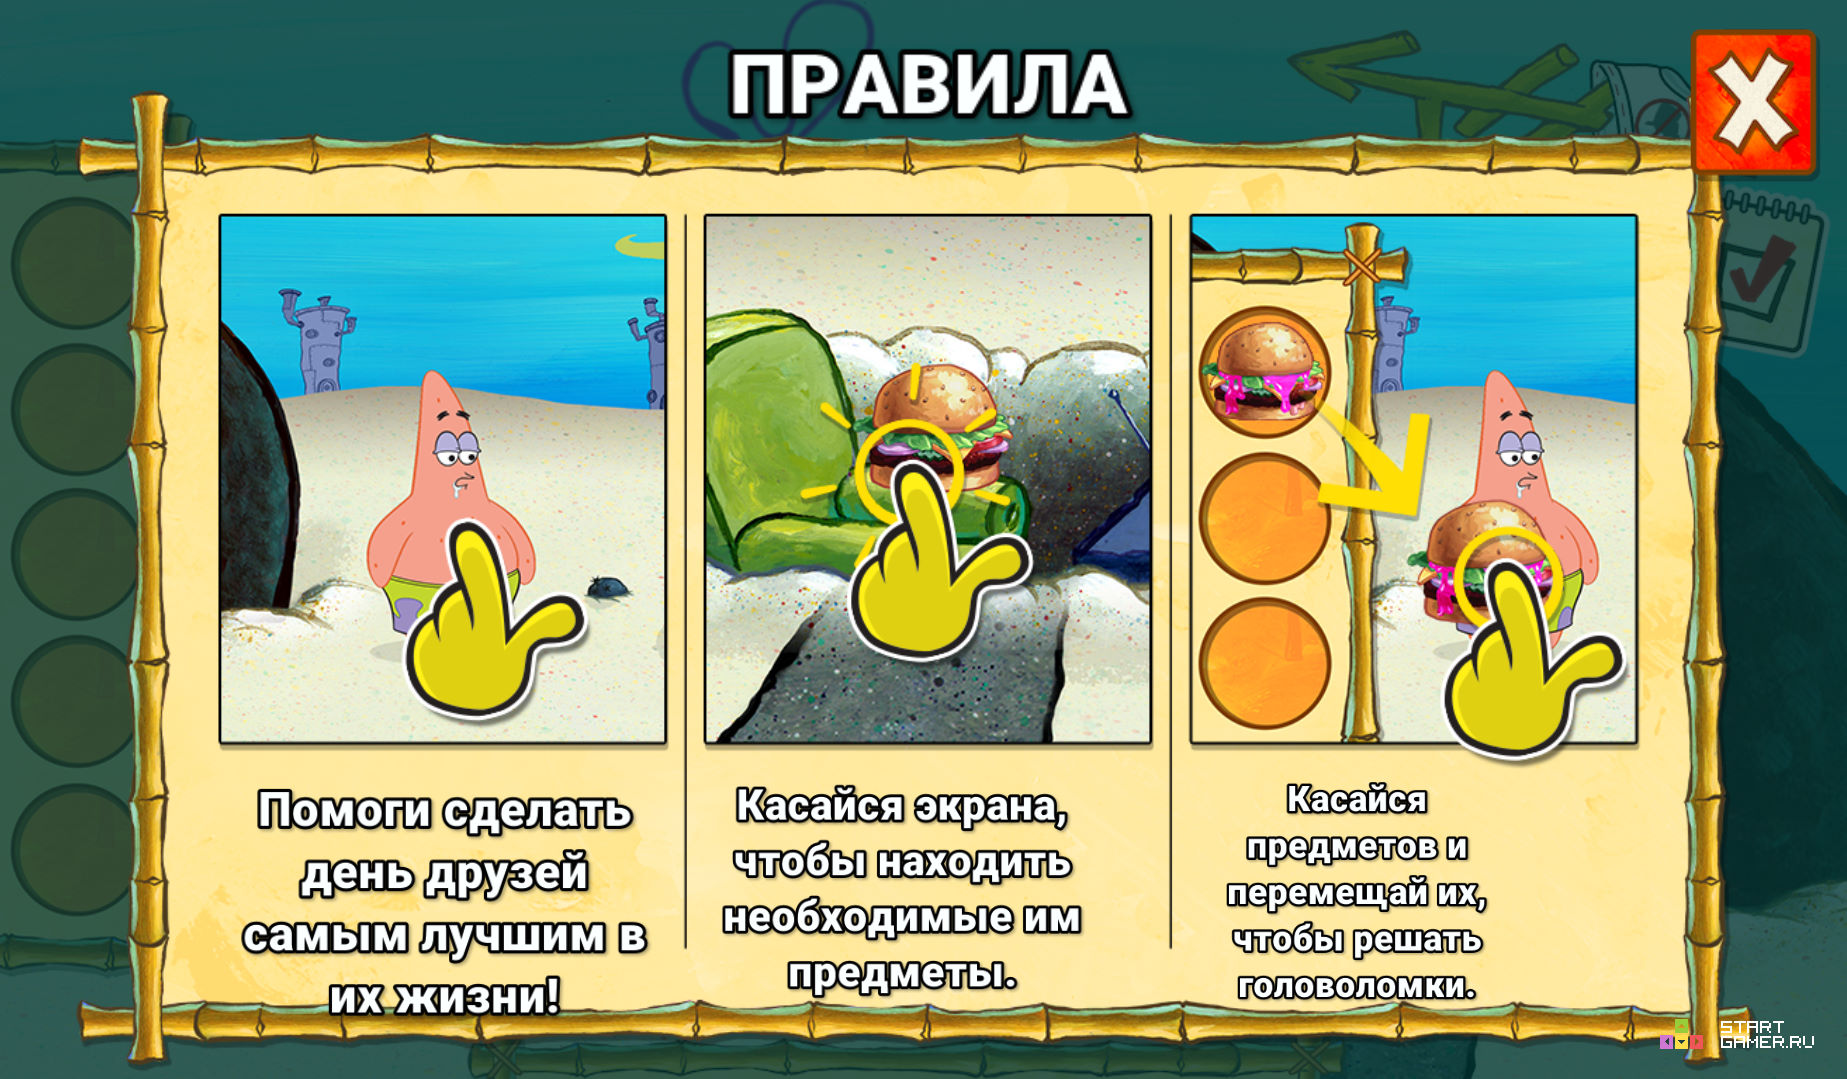 (Spongebob Saves The Day) - играть онлайн бесплатно (изображение № 10) .